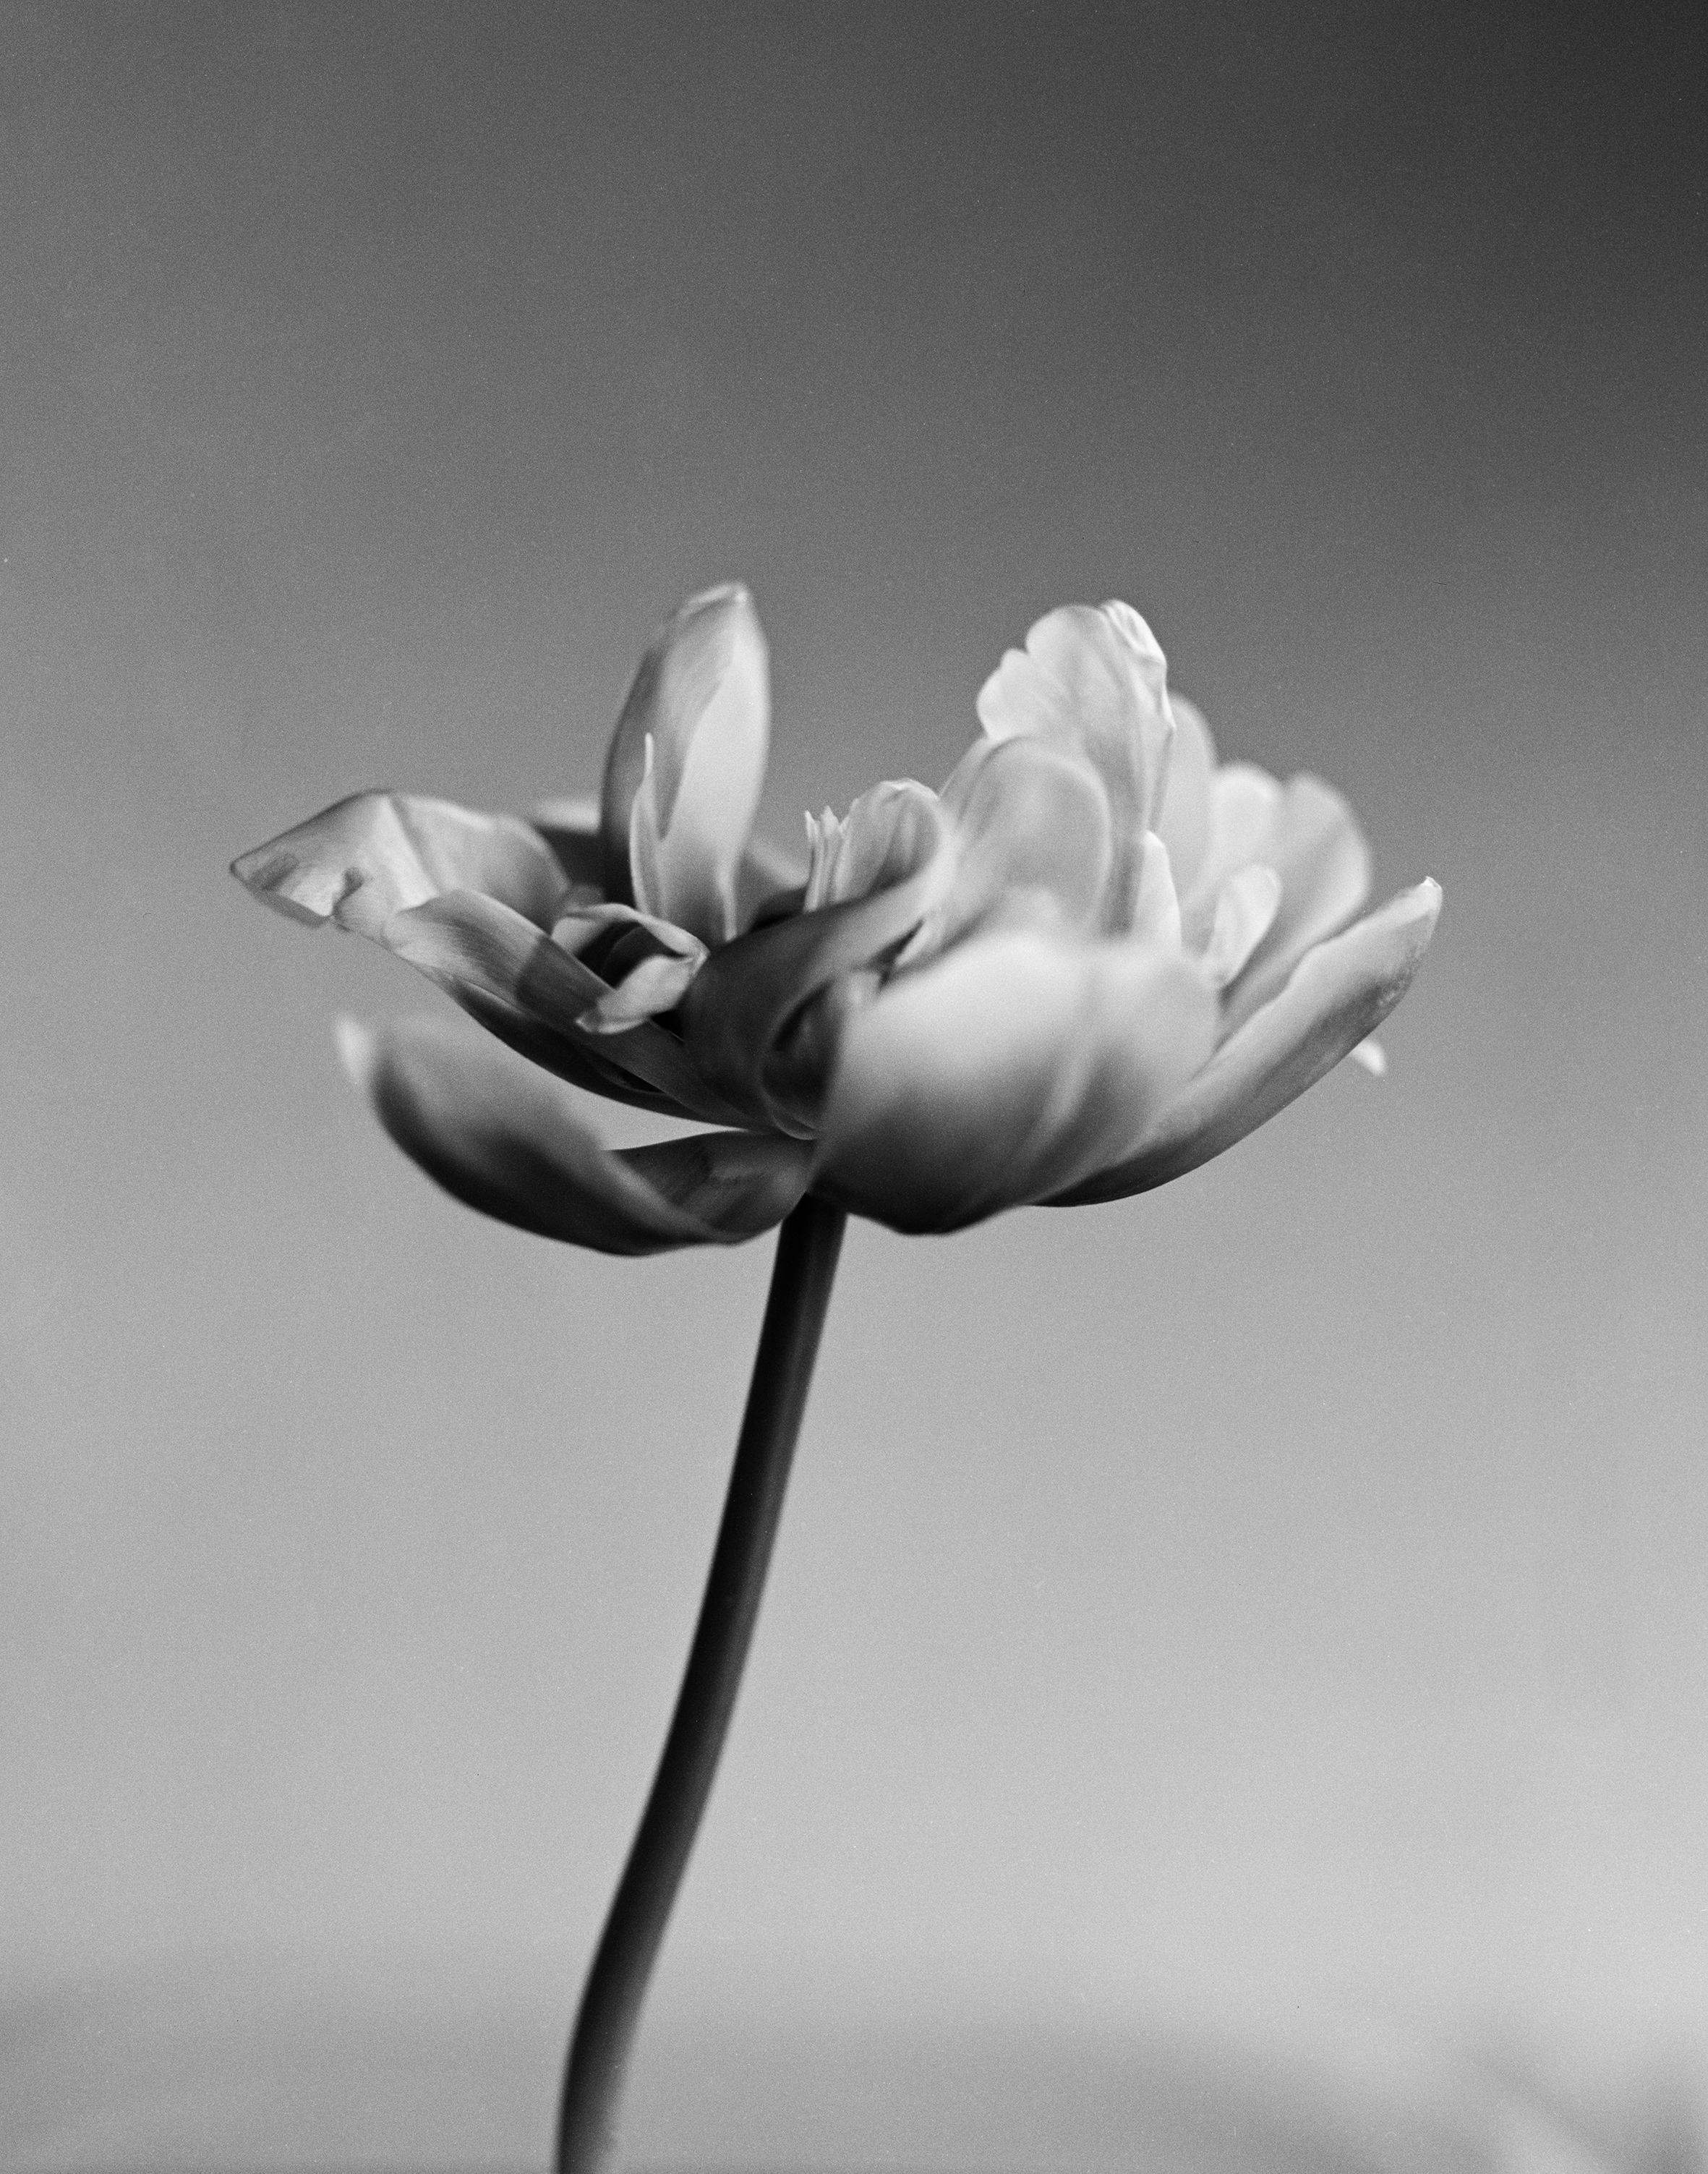 Tulpe – analoge Schwarz-Weiß-Blumenfotografie, limitierte Auflage von 10 Stück